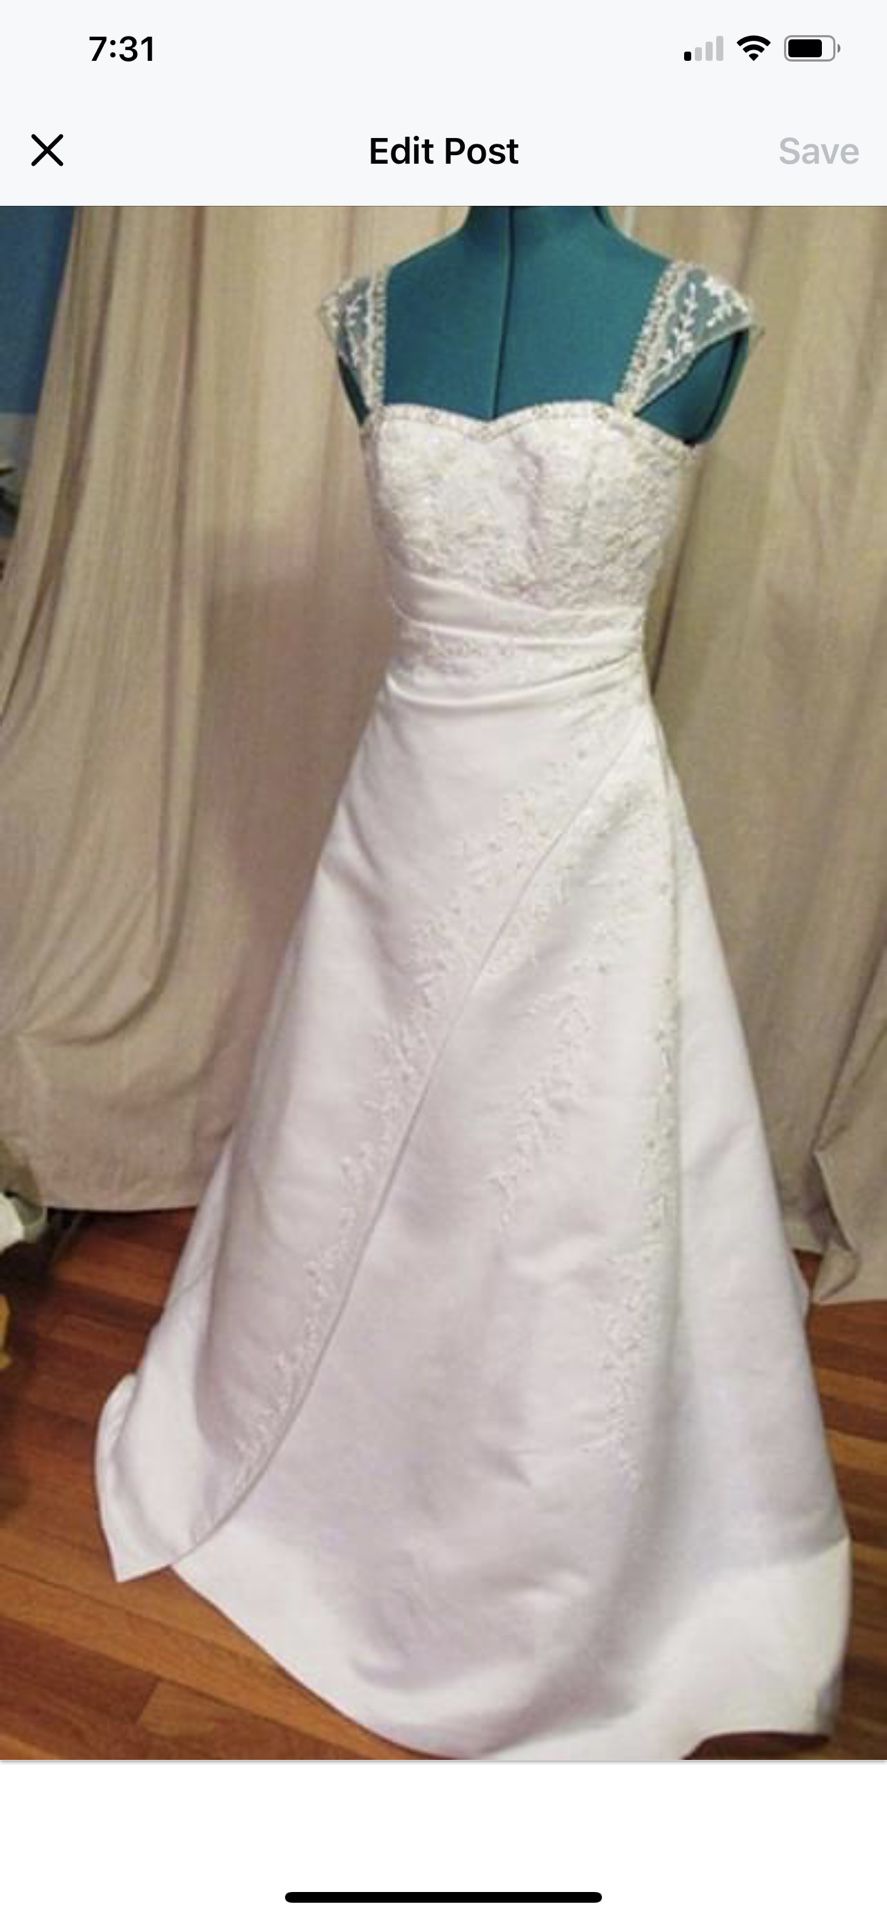 New Michealangelo Wedding Dress Size 4